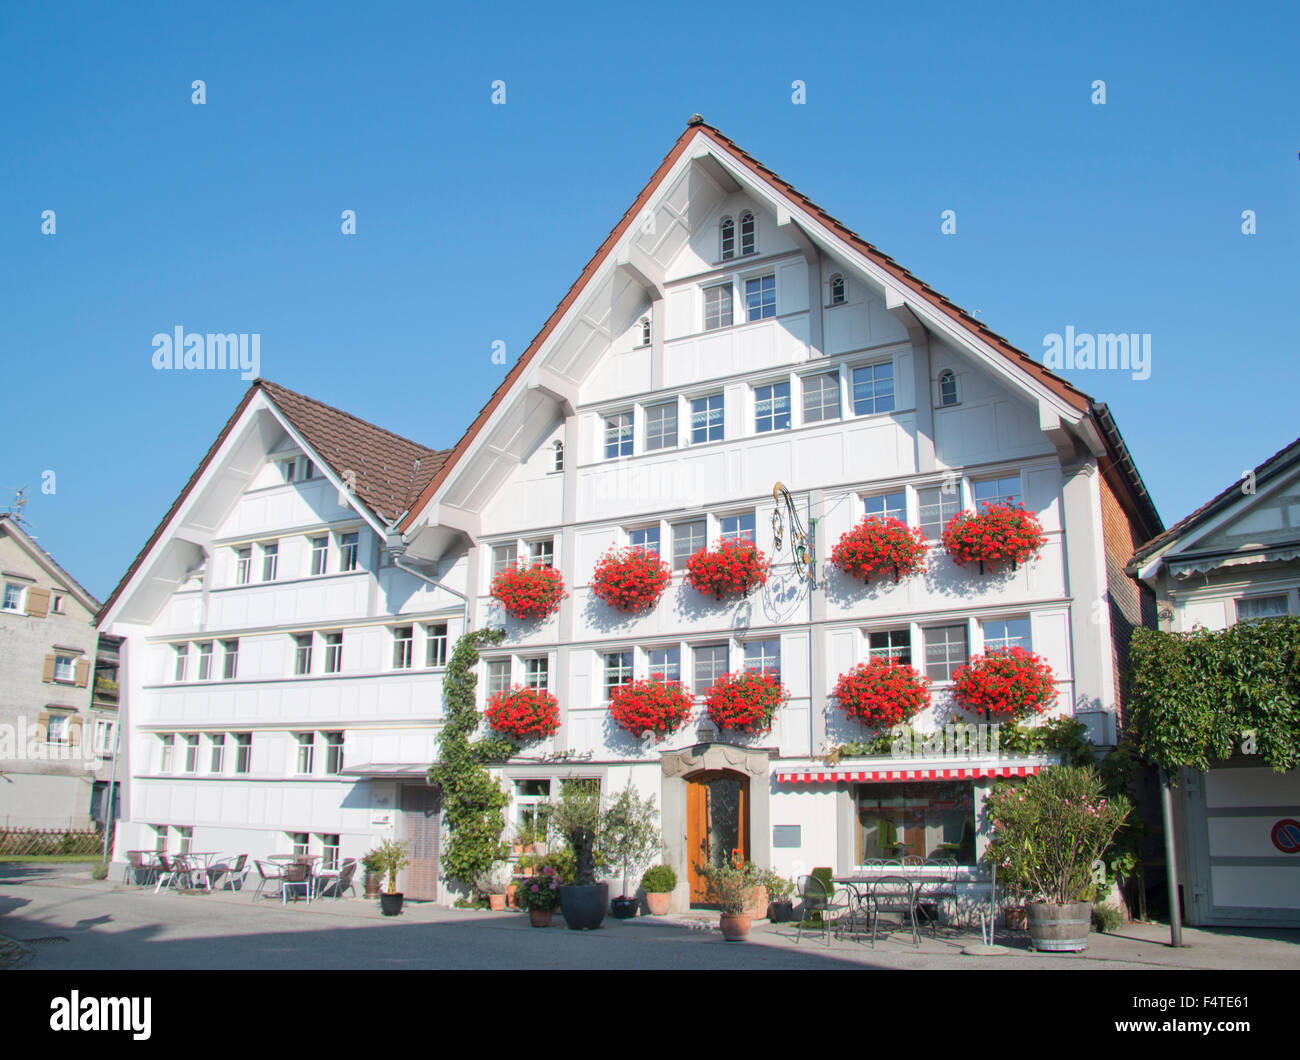 Switzerland, Europe, Stein, Appenzell  Ausserrhoden, village, houses, homes, geraniums, facade Stock Photo